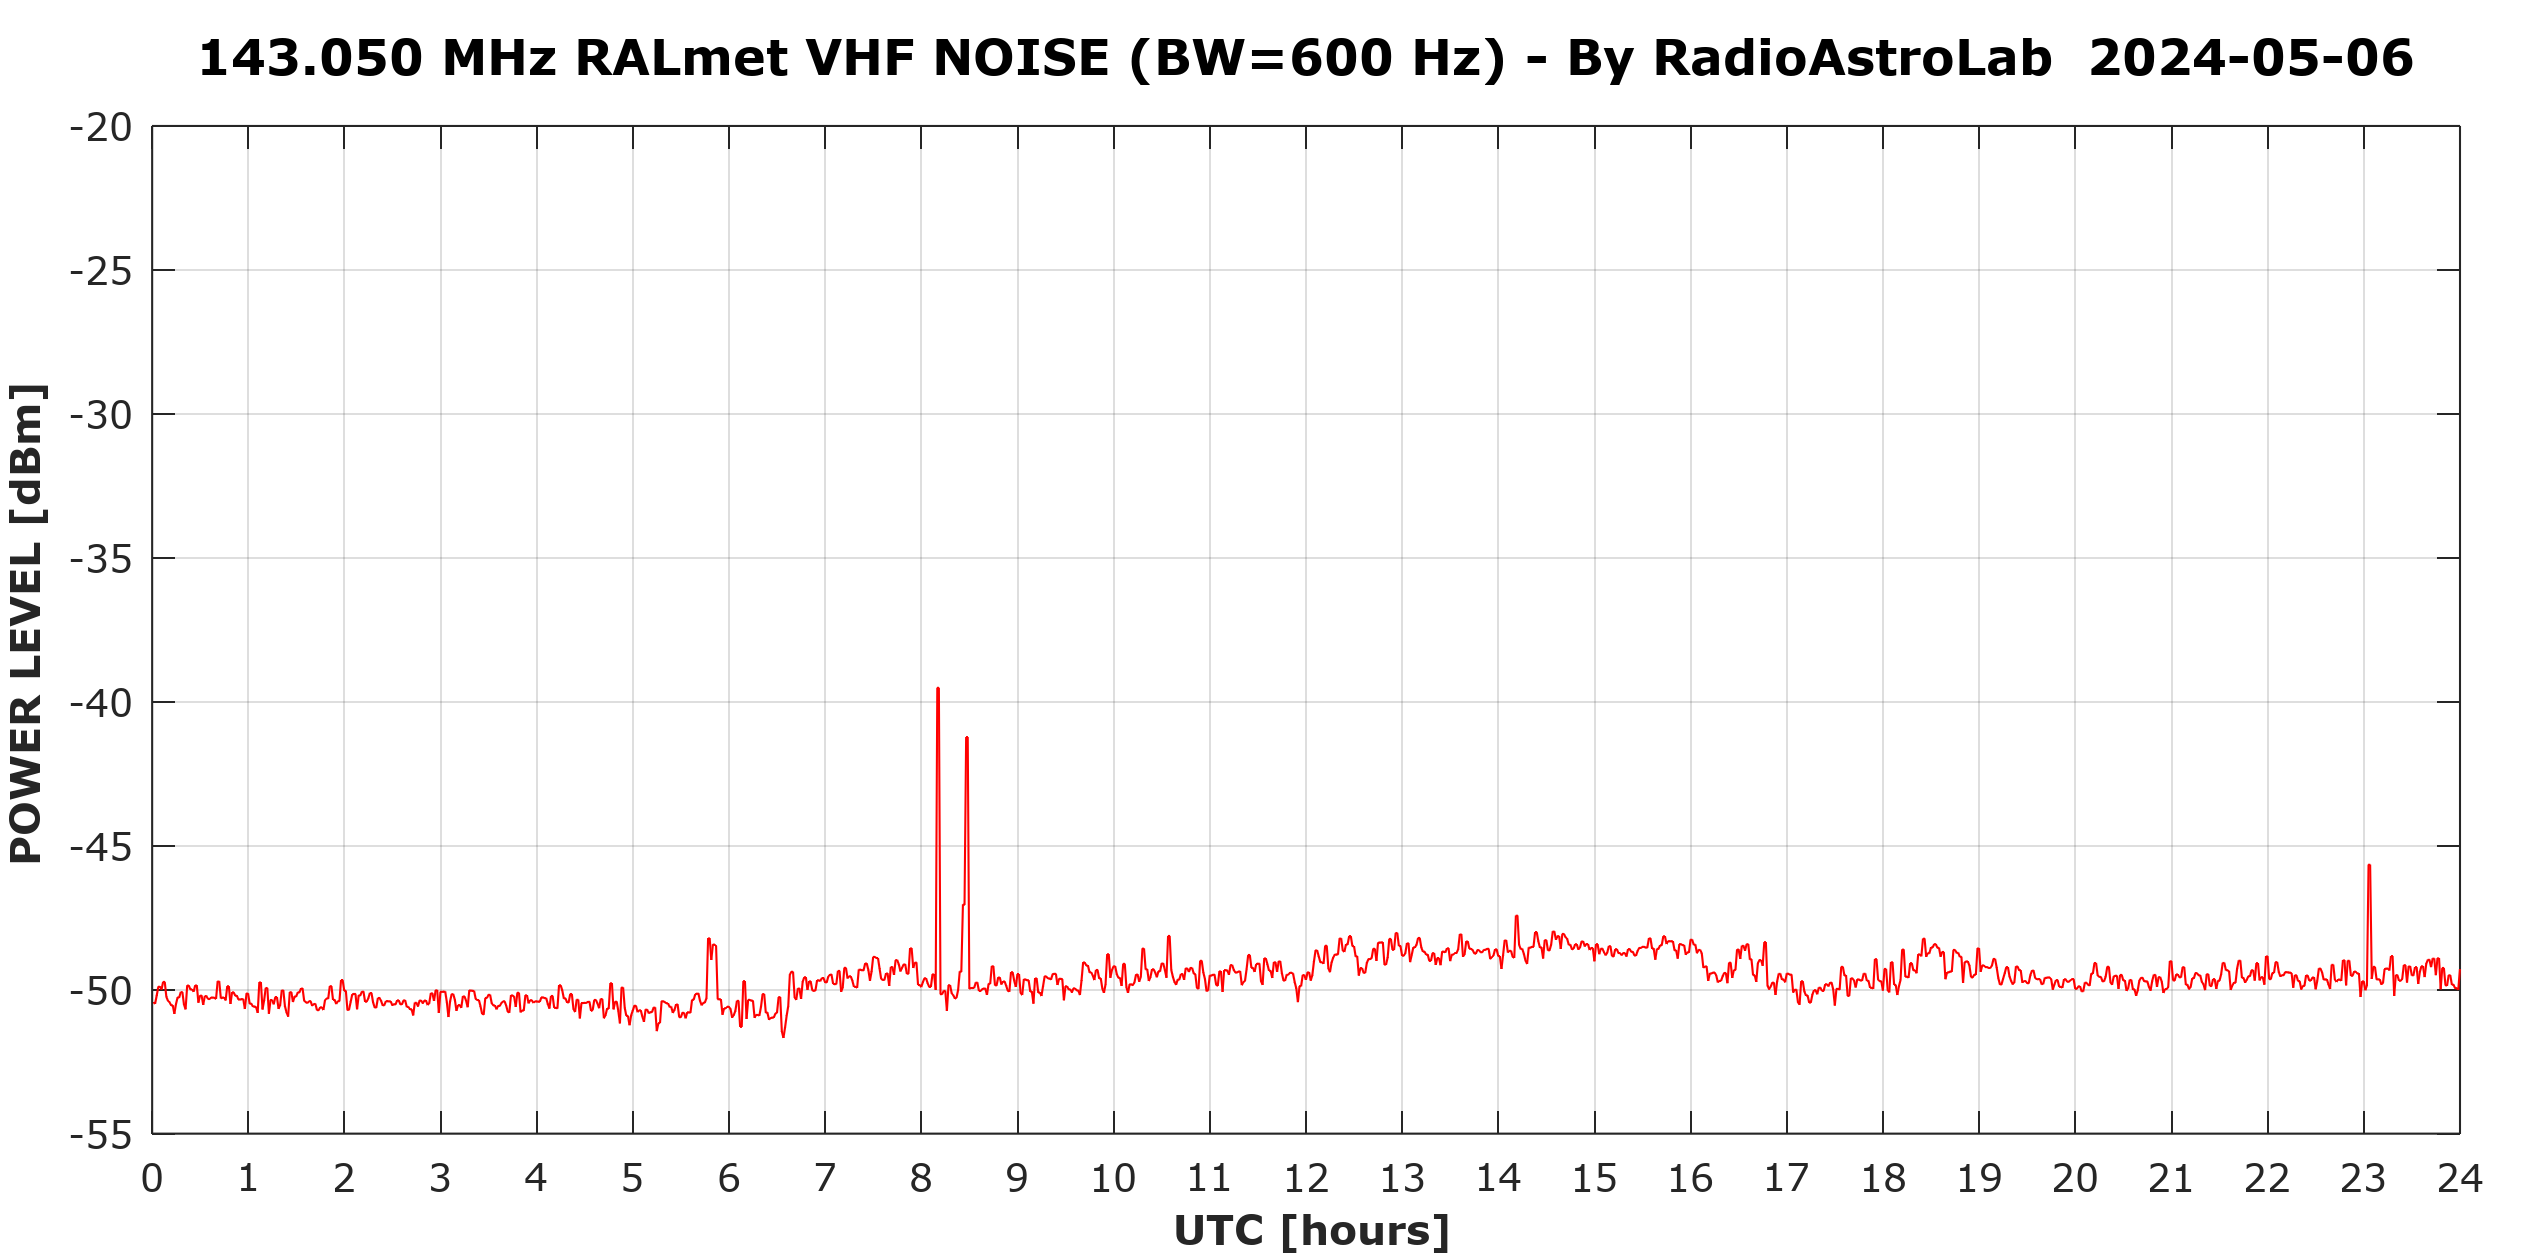 Variazioni della potenza media giornaliera del rumore misurato dalla stazione ricevente.